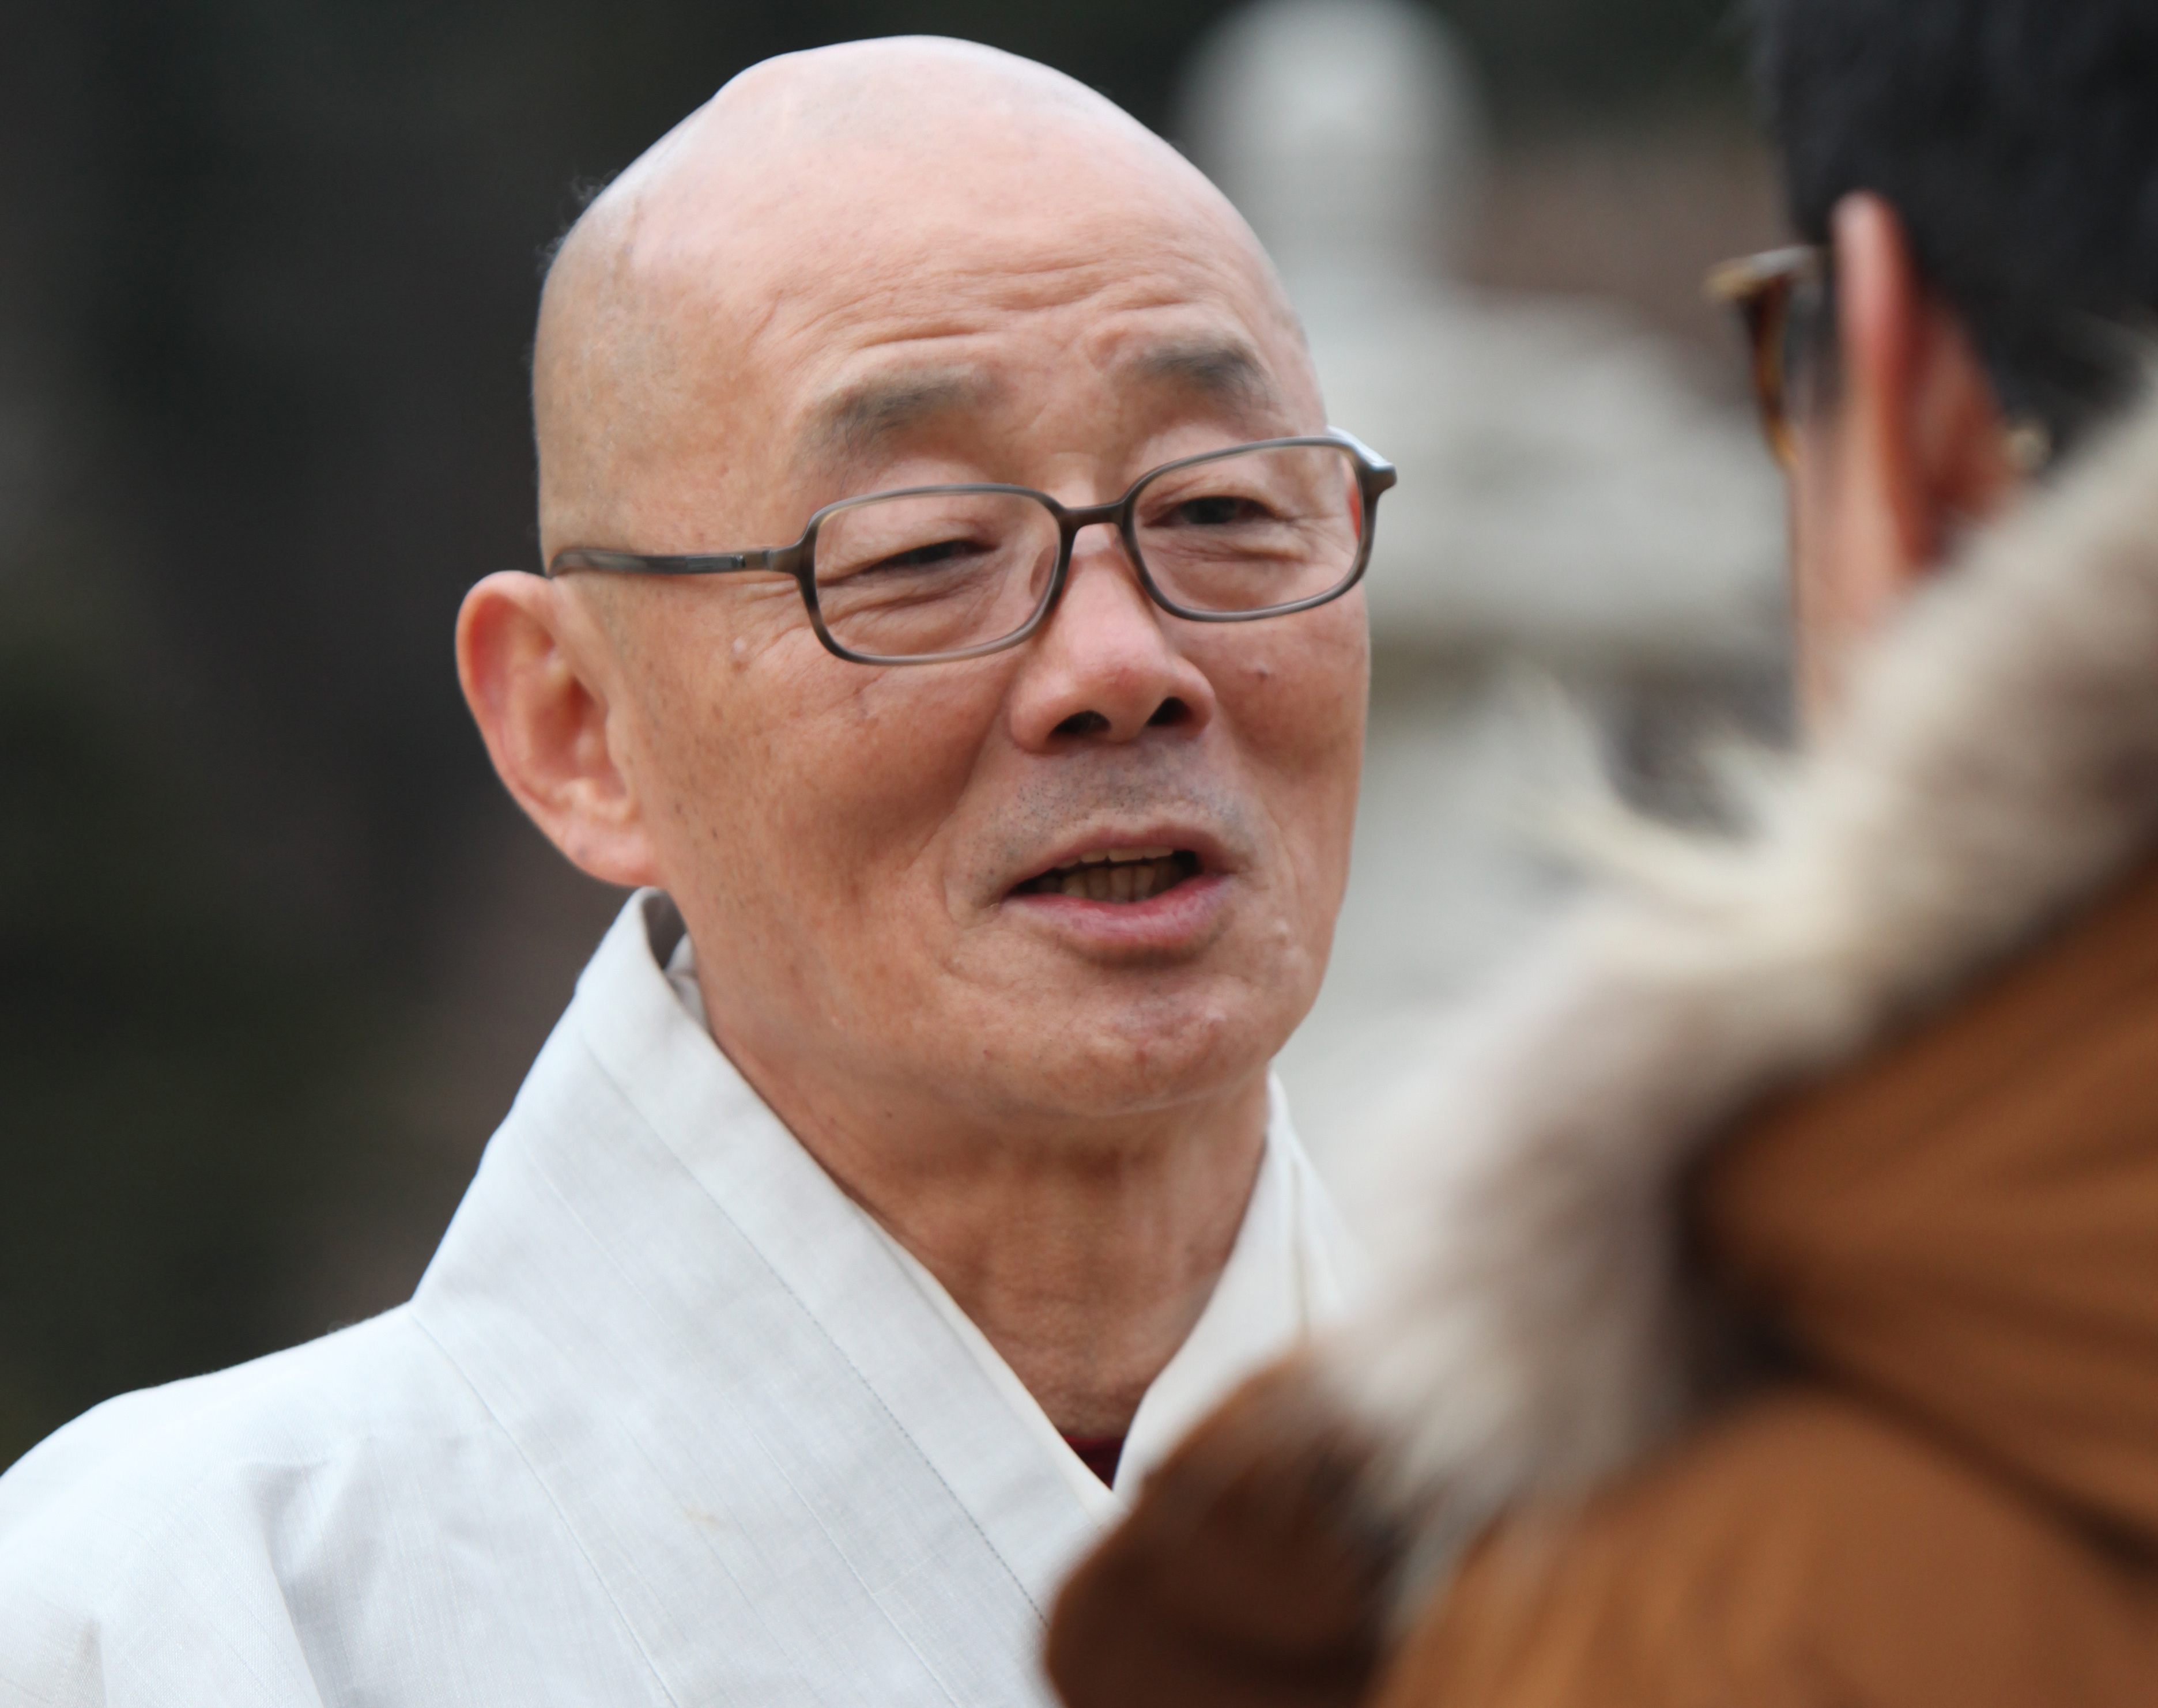 지난 22일 오대산 월정사에서 오마이뉴스를 만난 명진 스님(전 봉은사 주지)은 박근혜 정부를 “죽음의 정부”라고 말했다.
